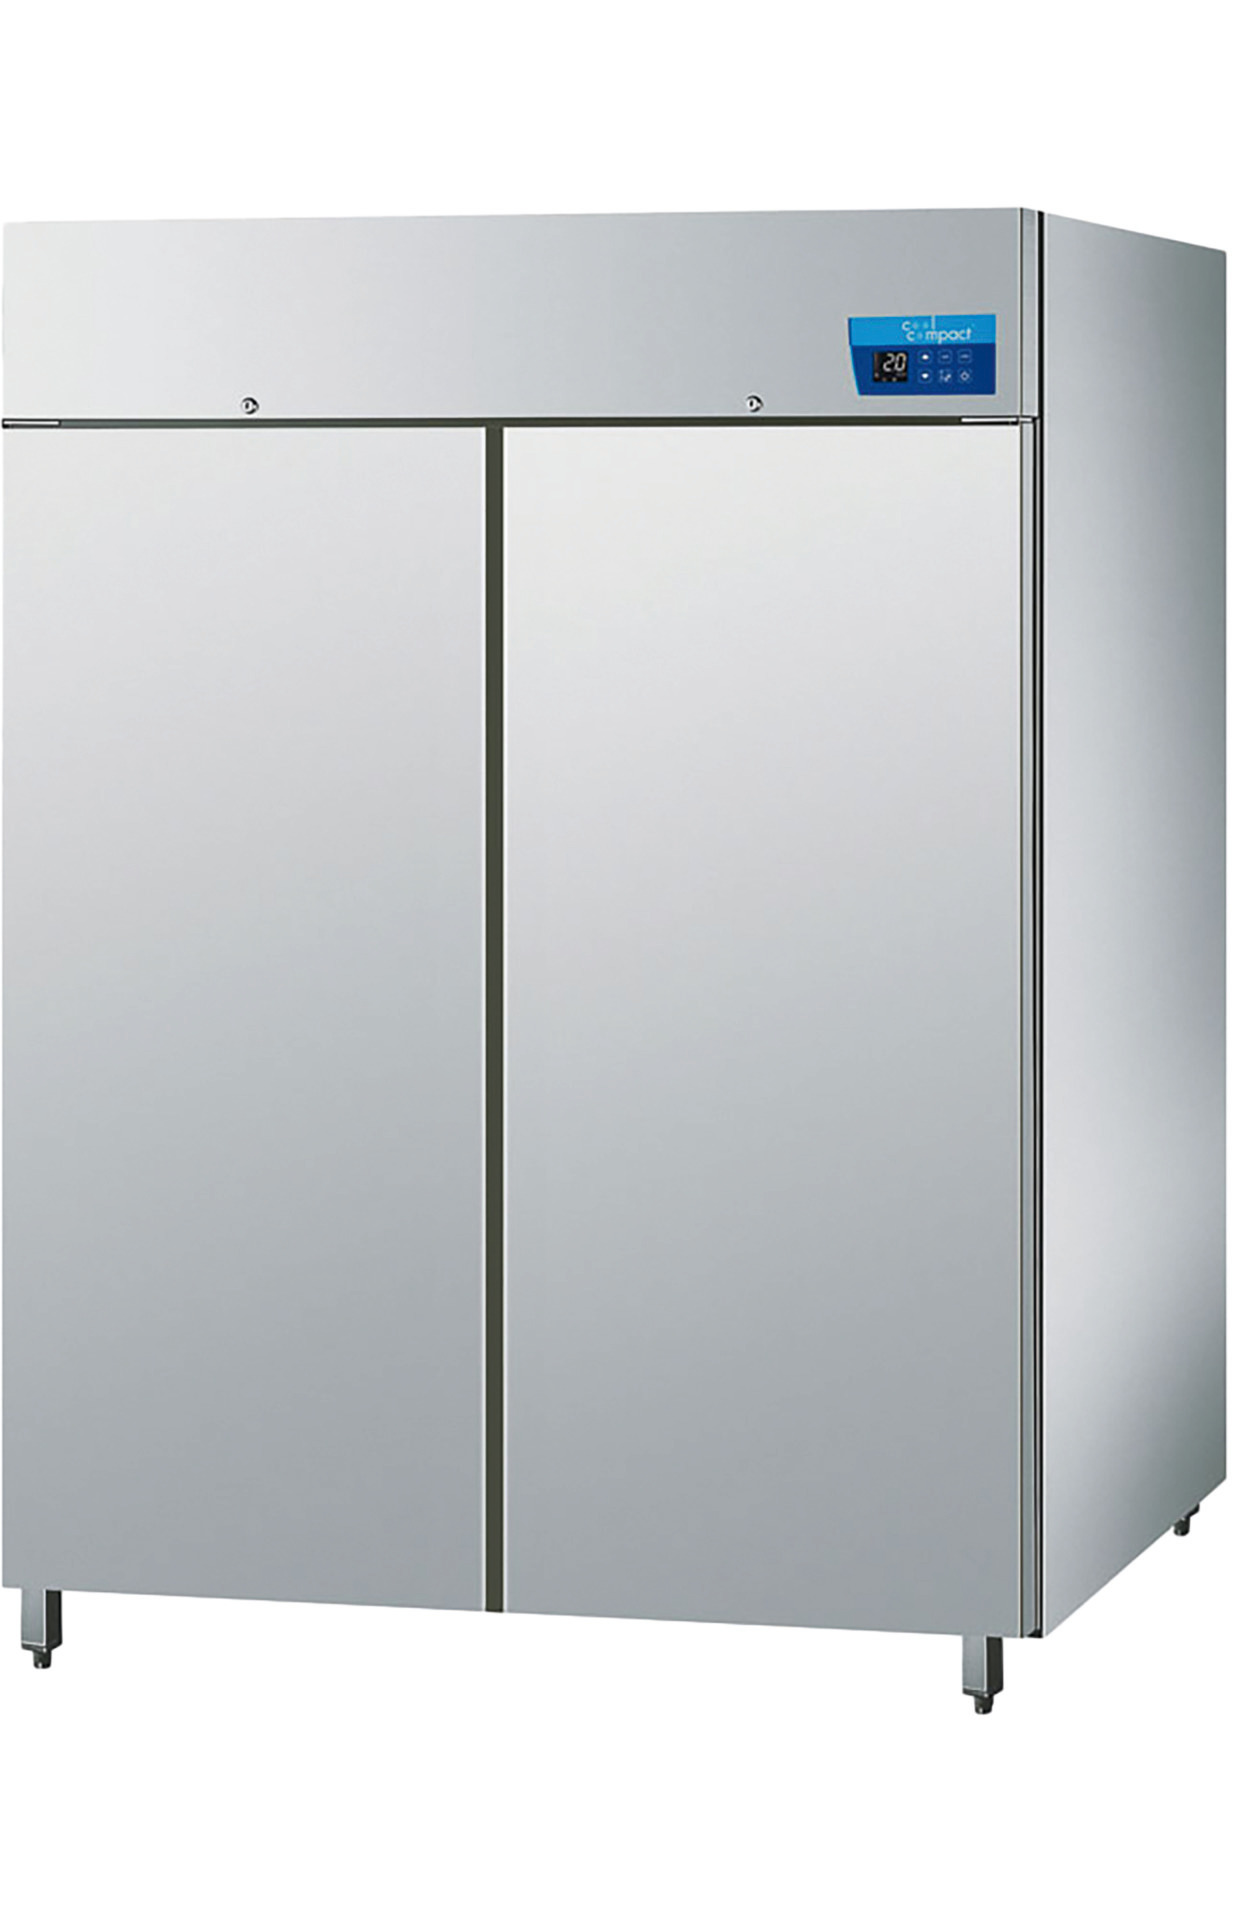 Umluft-Kühlschrank mit 2 Türen je  22 x GN 2/1 / steckerfertig